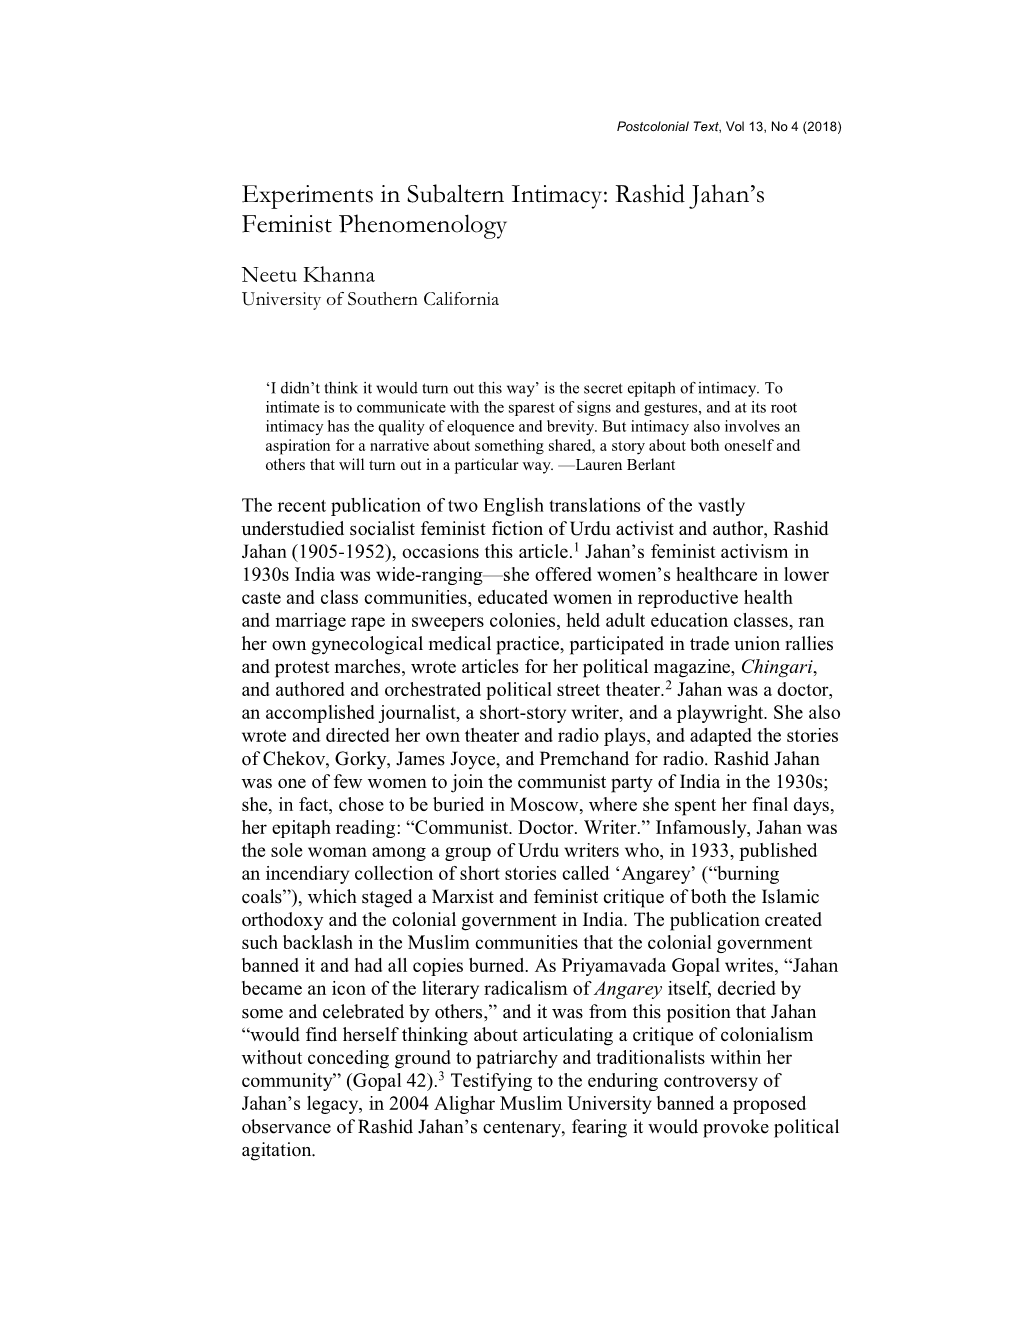 Rashid Jahan's Feminist Phenomenology